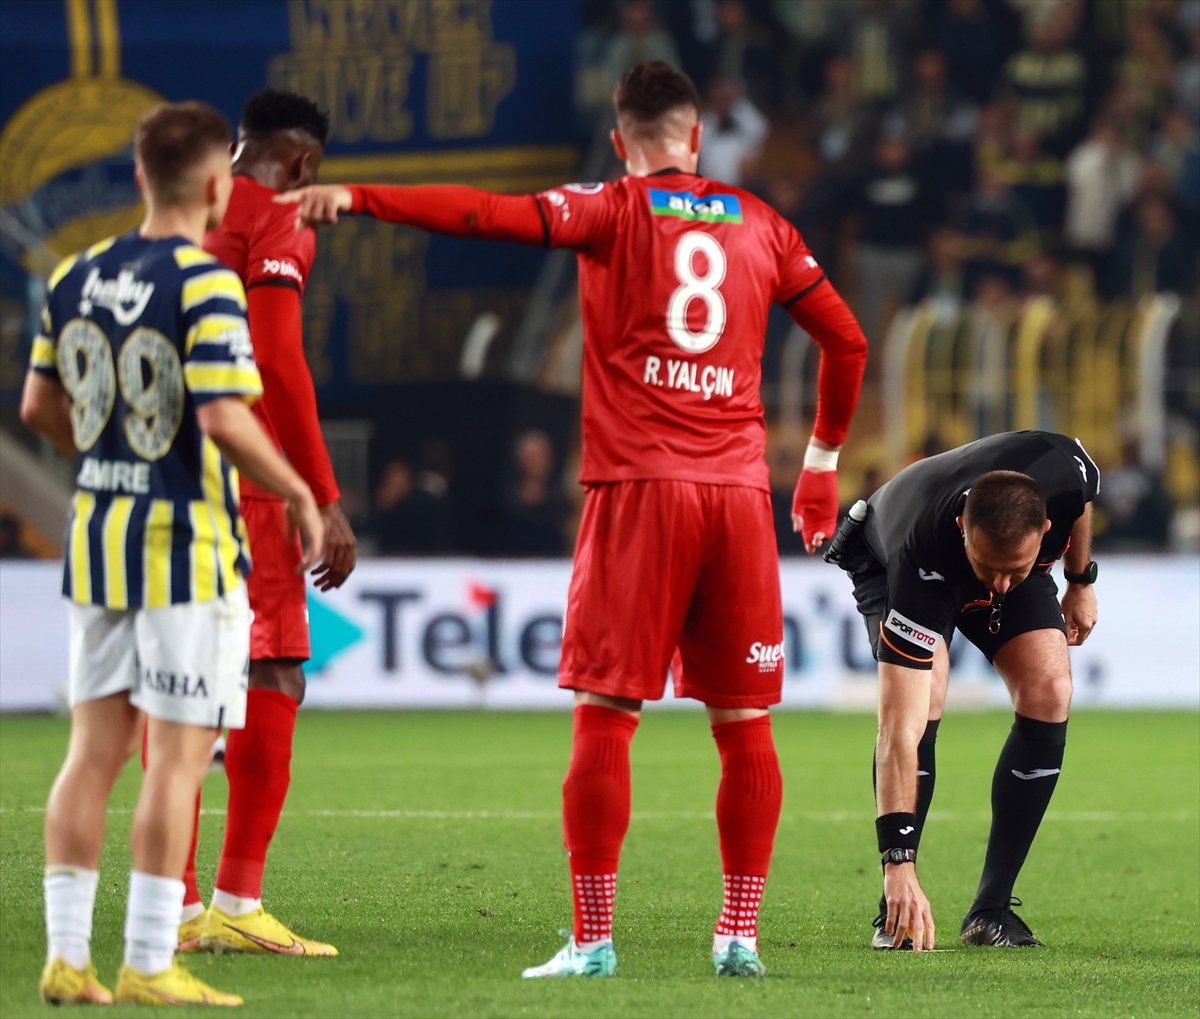 Fenerbahçe, Sivasspor u tek golle mağlup etti #6